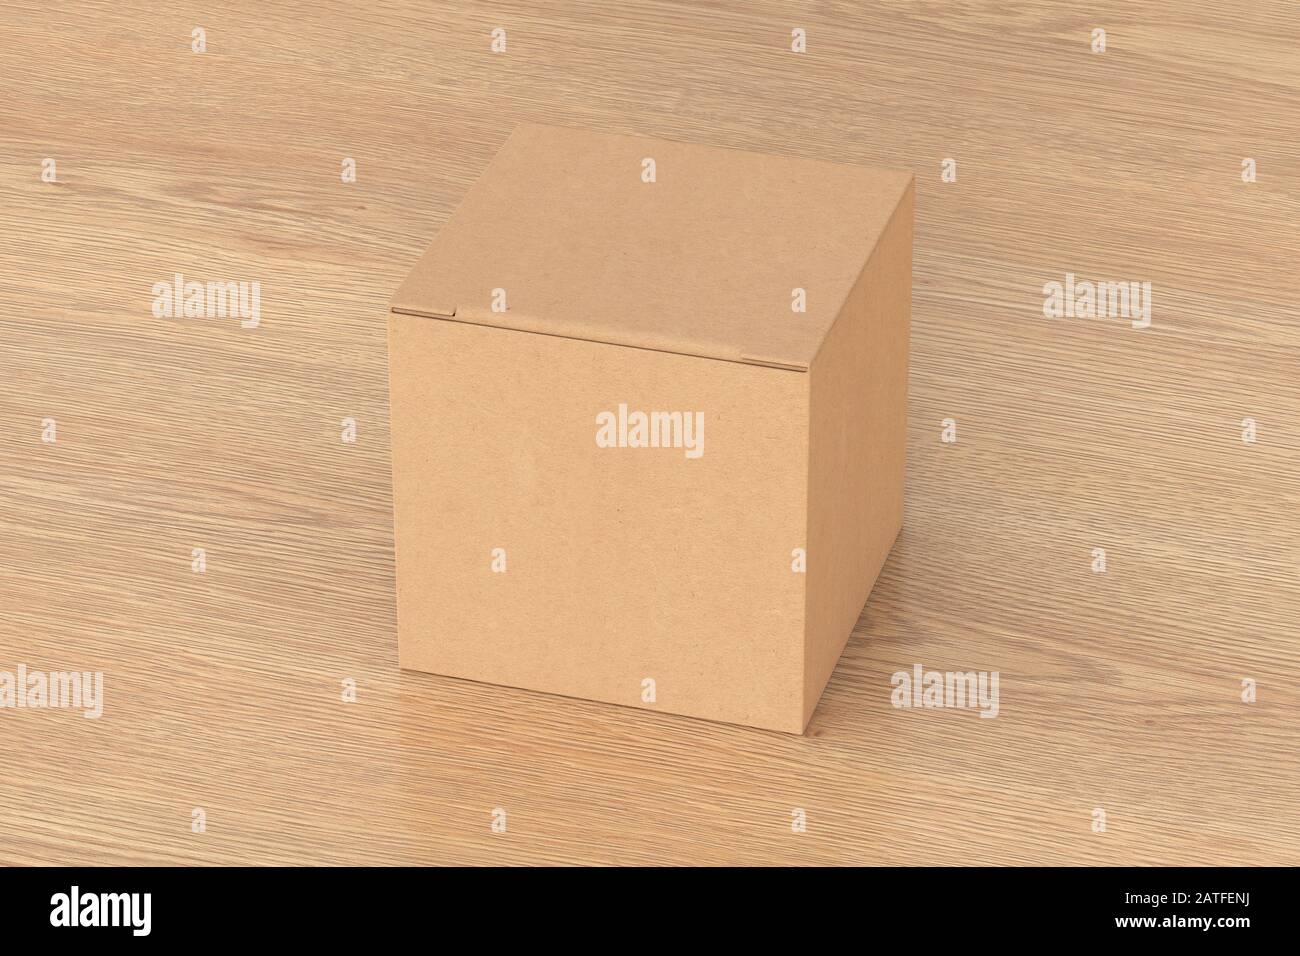 Boîte cadeau cube en carton vierge avec couvercle à rabat fermé sur fond en bois. Chemin de détourage autour de la maquette de boîte Banque D'Images